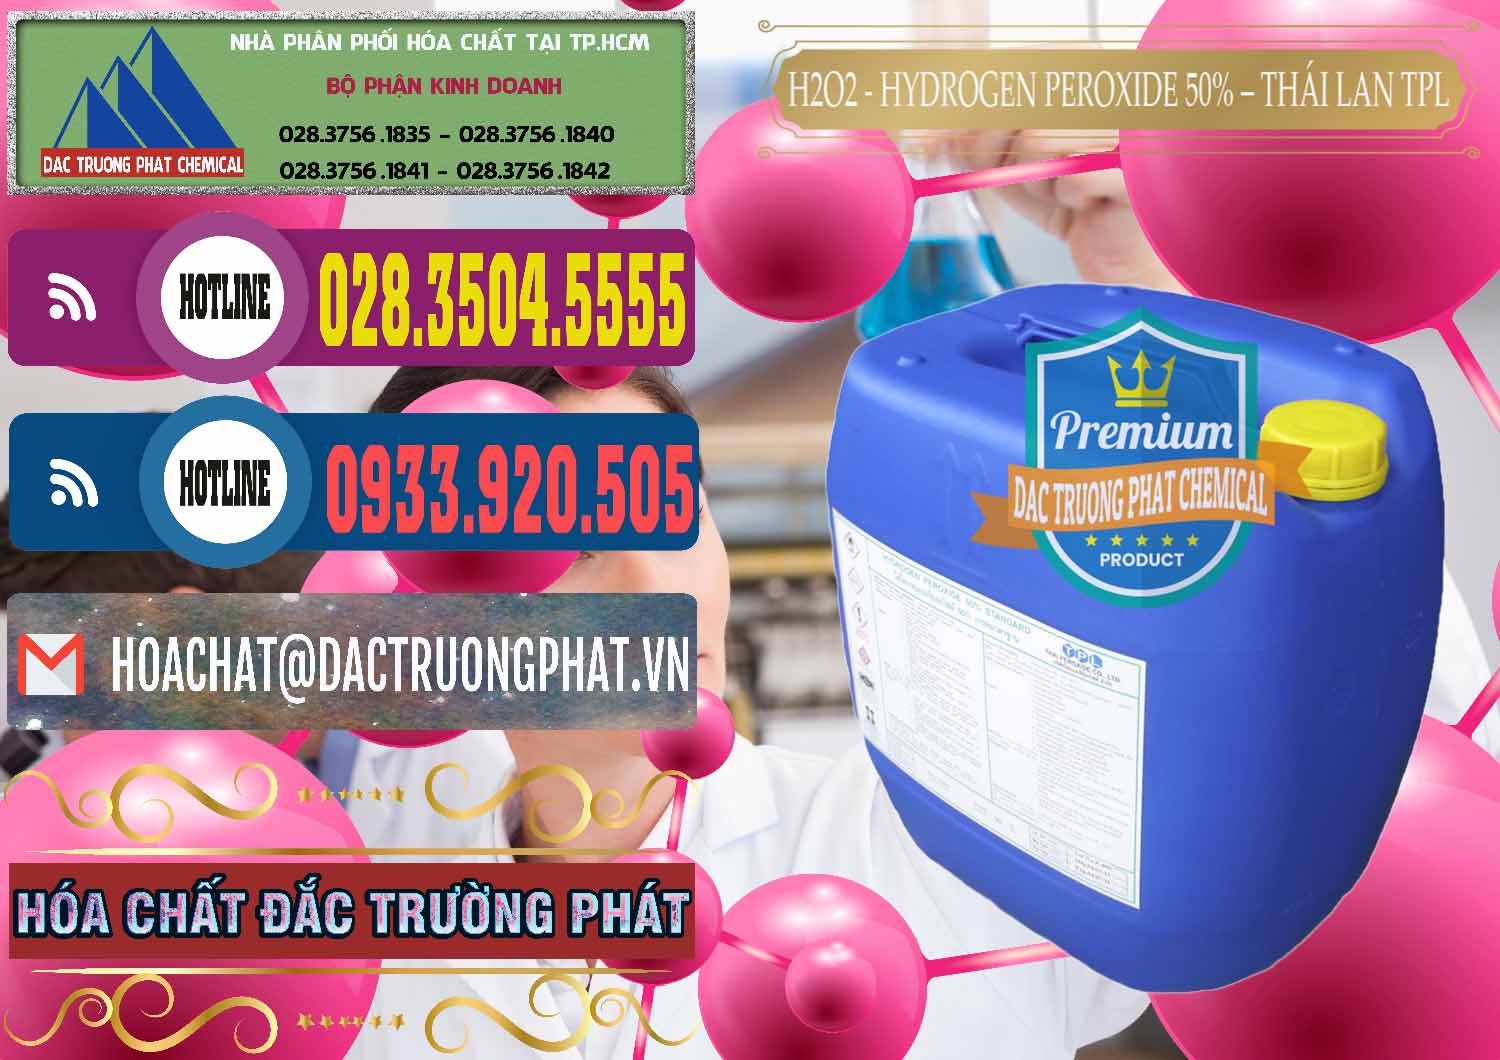 Nơi chuyên cung ứng & bán H2O2 - Hydrogen Peroxide 50% Thái Lan TPL - 0076 - Cty phân phối ( cung cấp ) hóa chất tại TP.HCM - muabanhoachat.com.vn